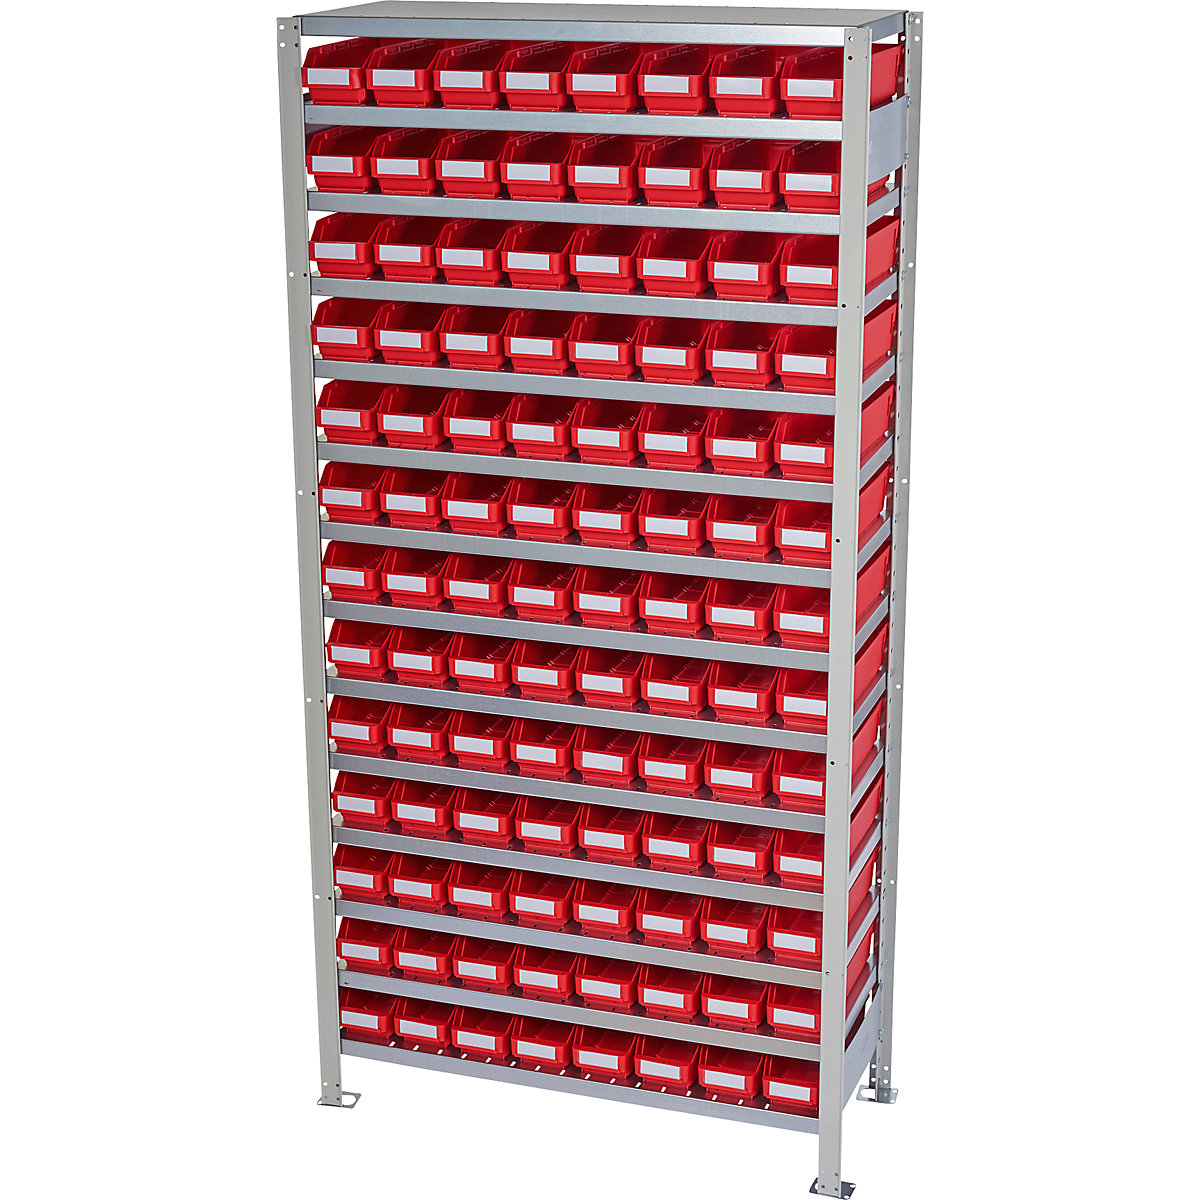 Estante de encaixar com caixas para estante – STEMO, altura da estante 2100 mm, estante básica, profundidade 300 mm, 104 caixas vermelhas-11